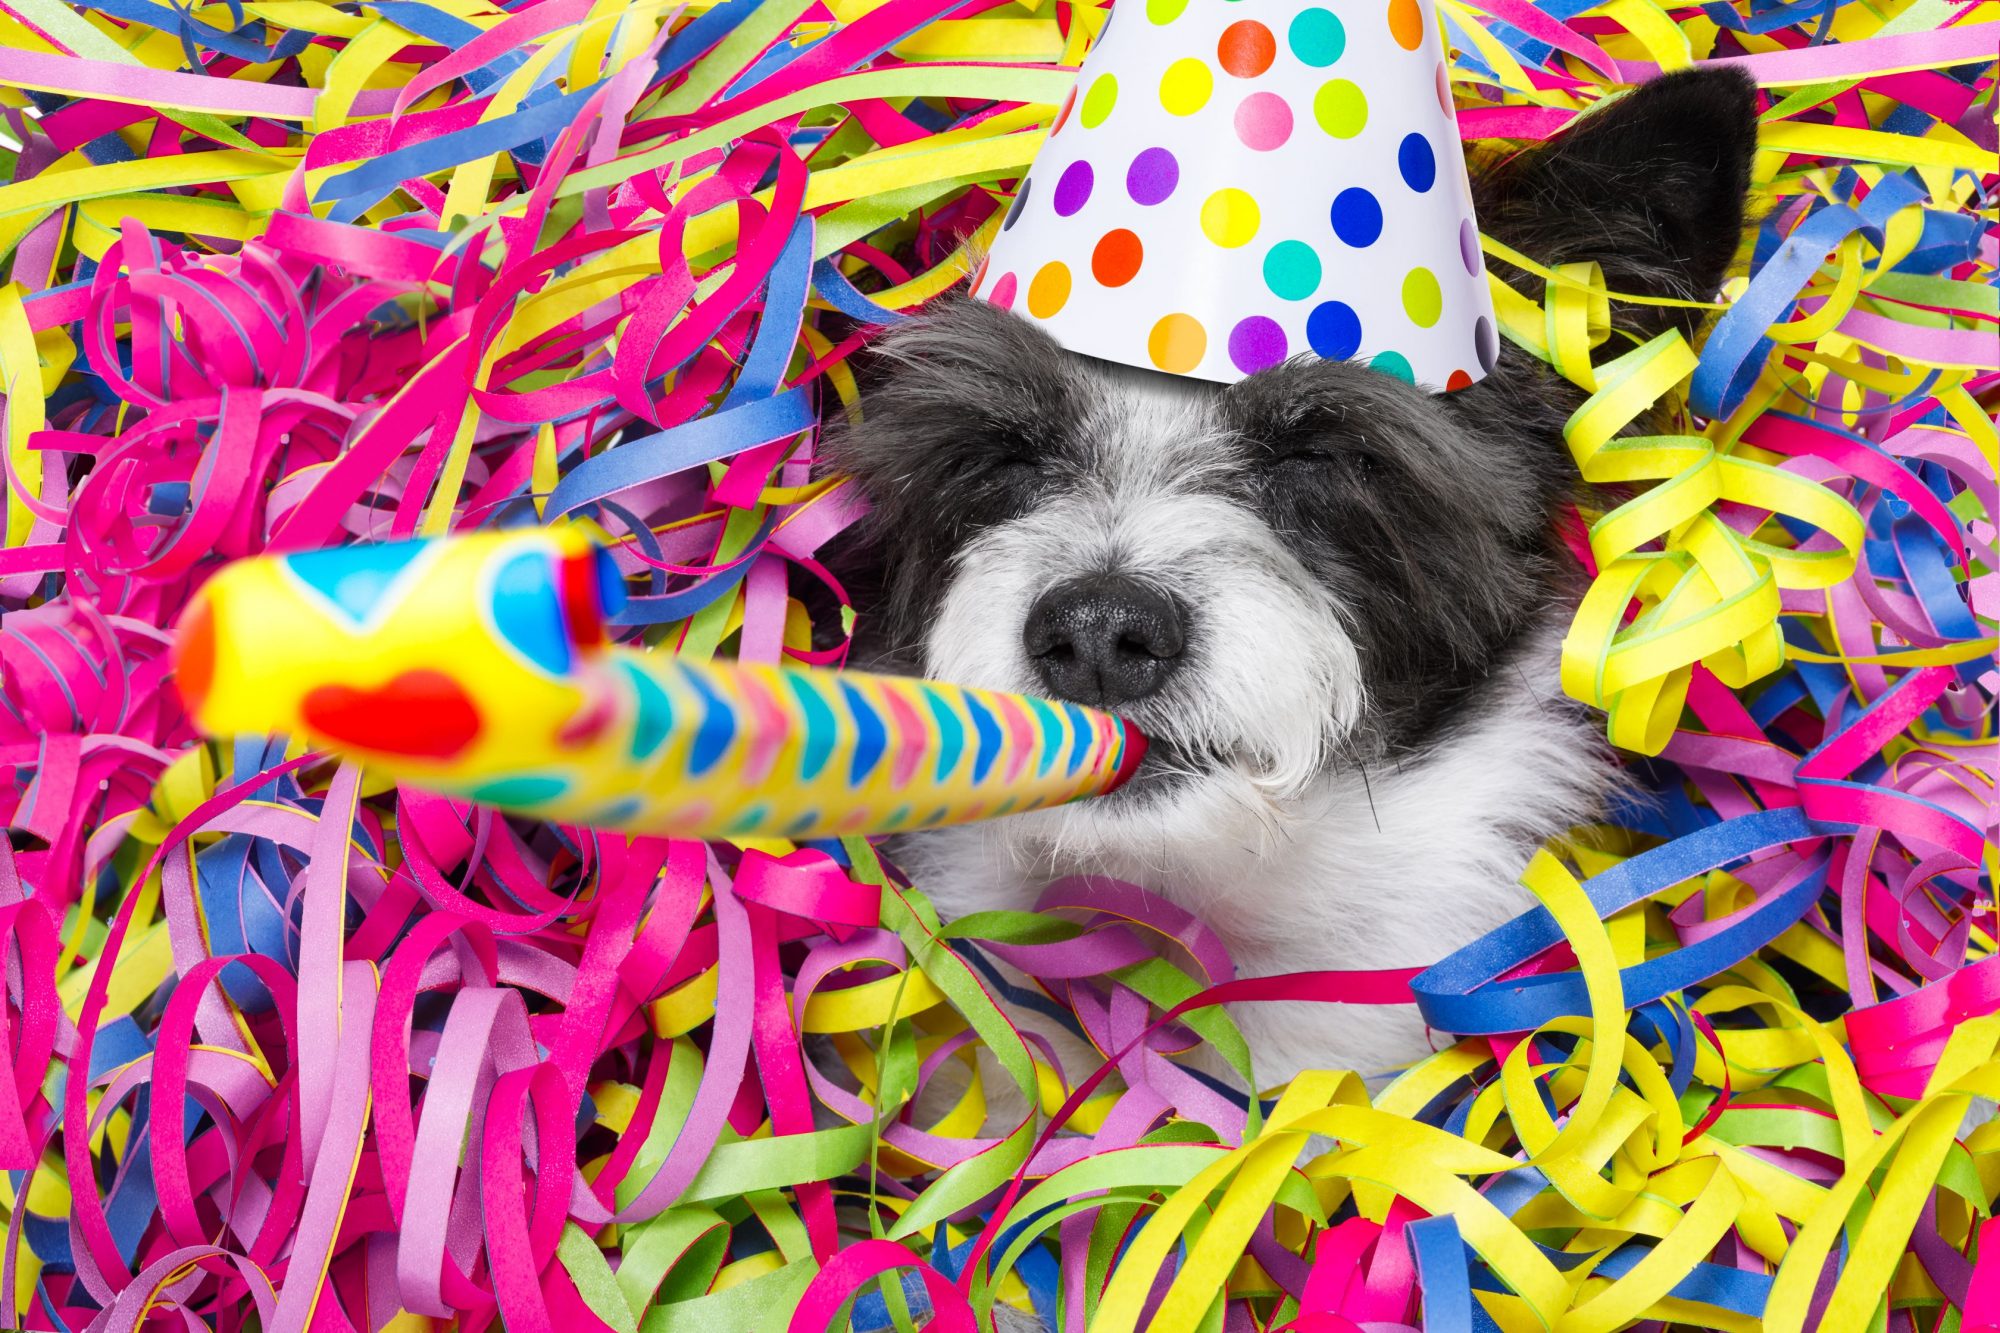 Dog celebrating New Years Eve